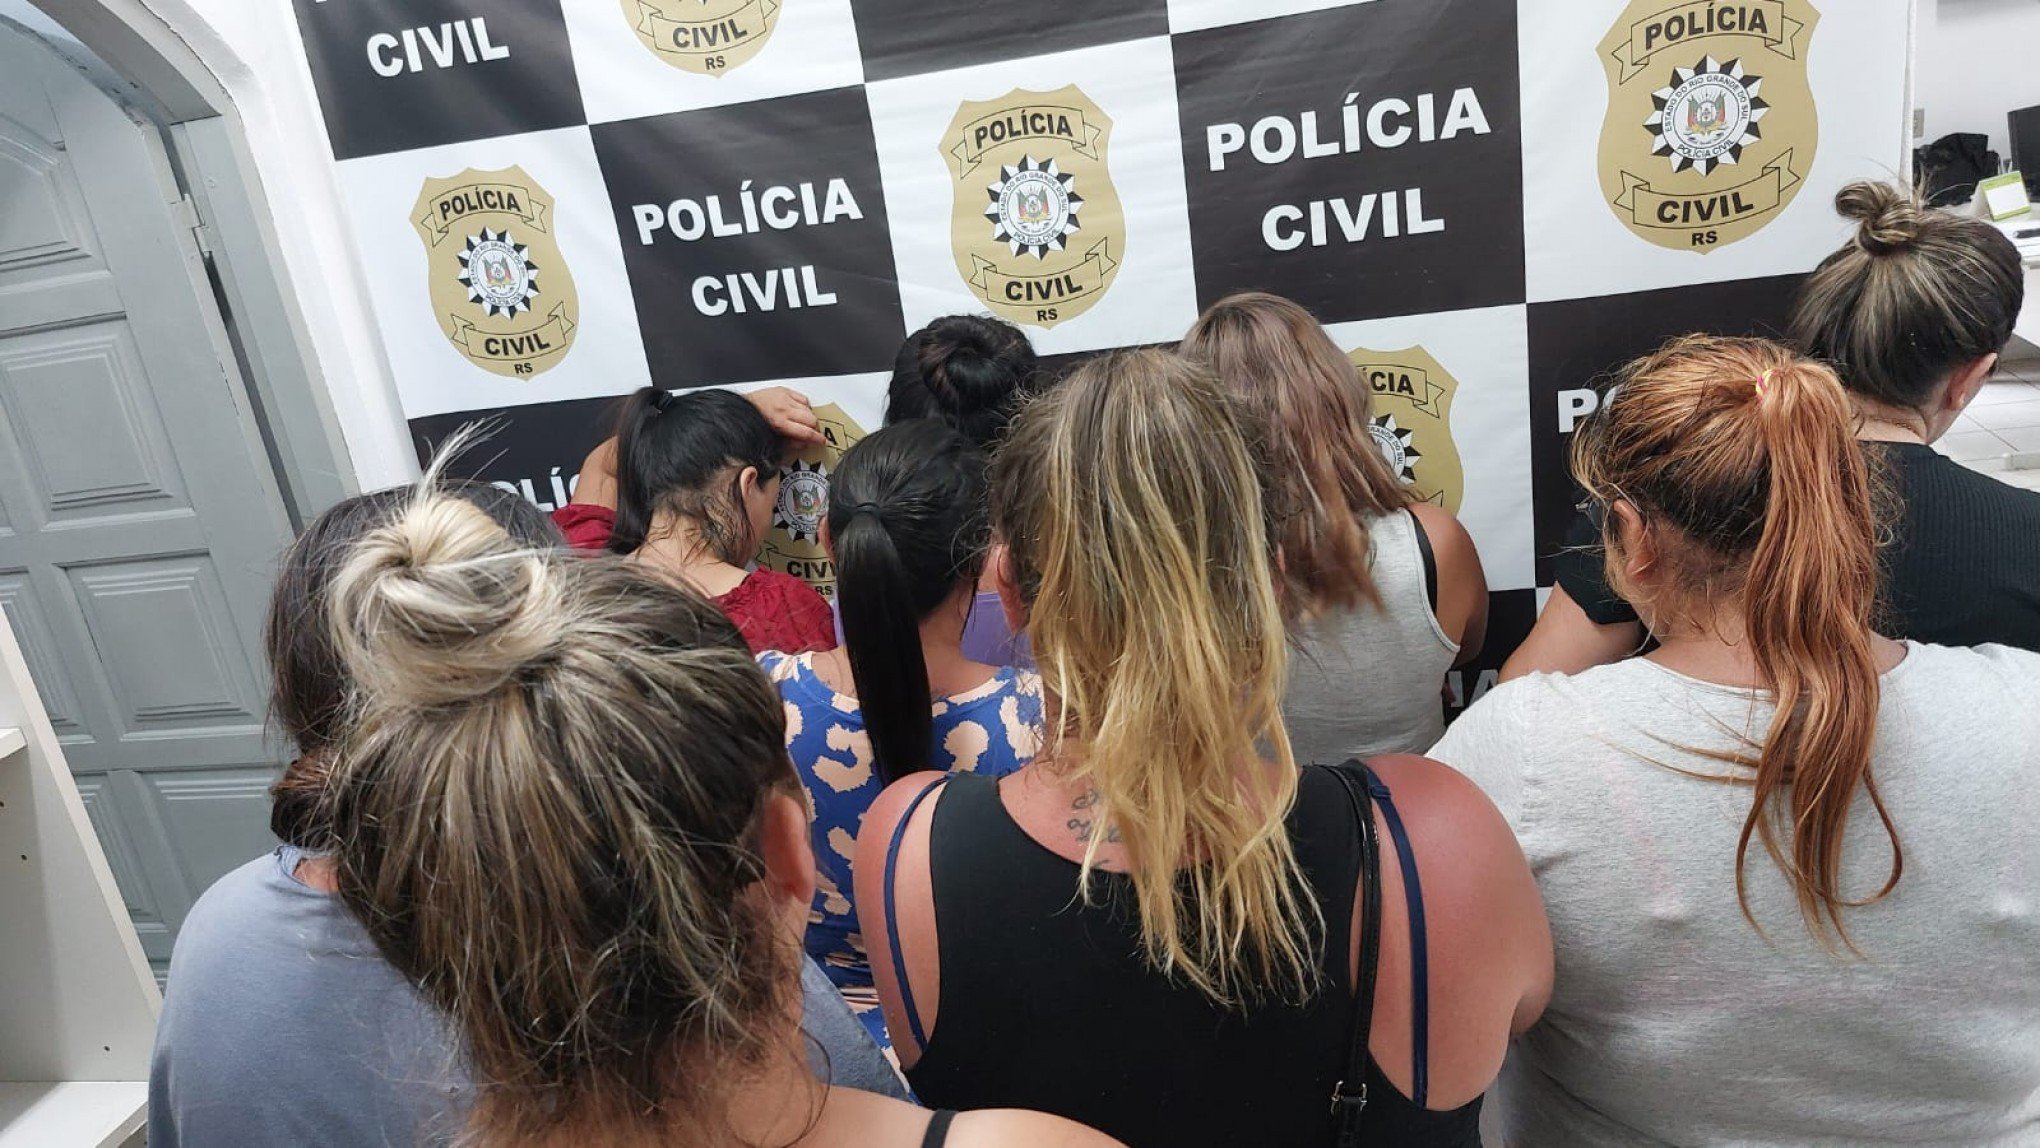 Entenda o que levou nove mulheres a serem detidas enquanto vendiam rifas na Serra